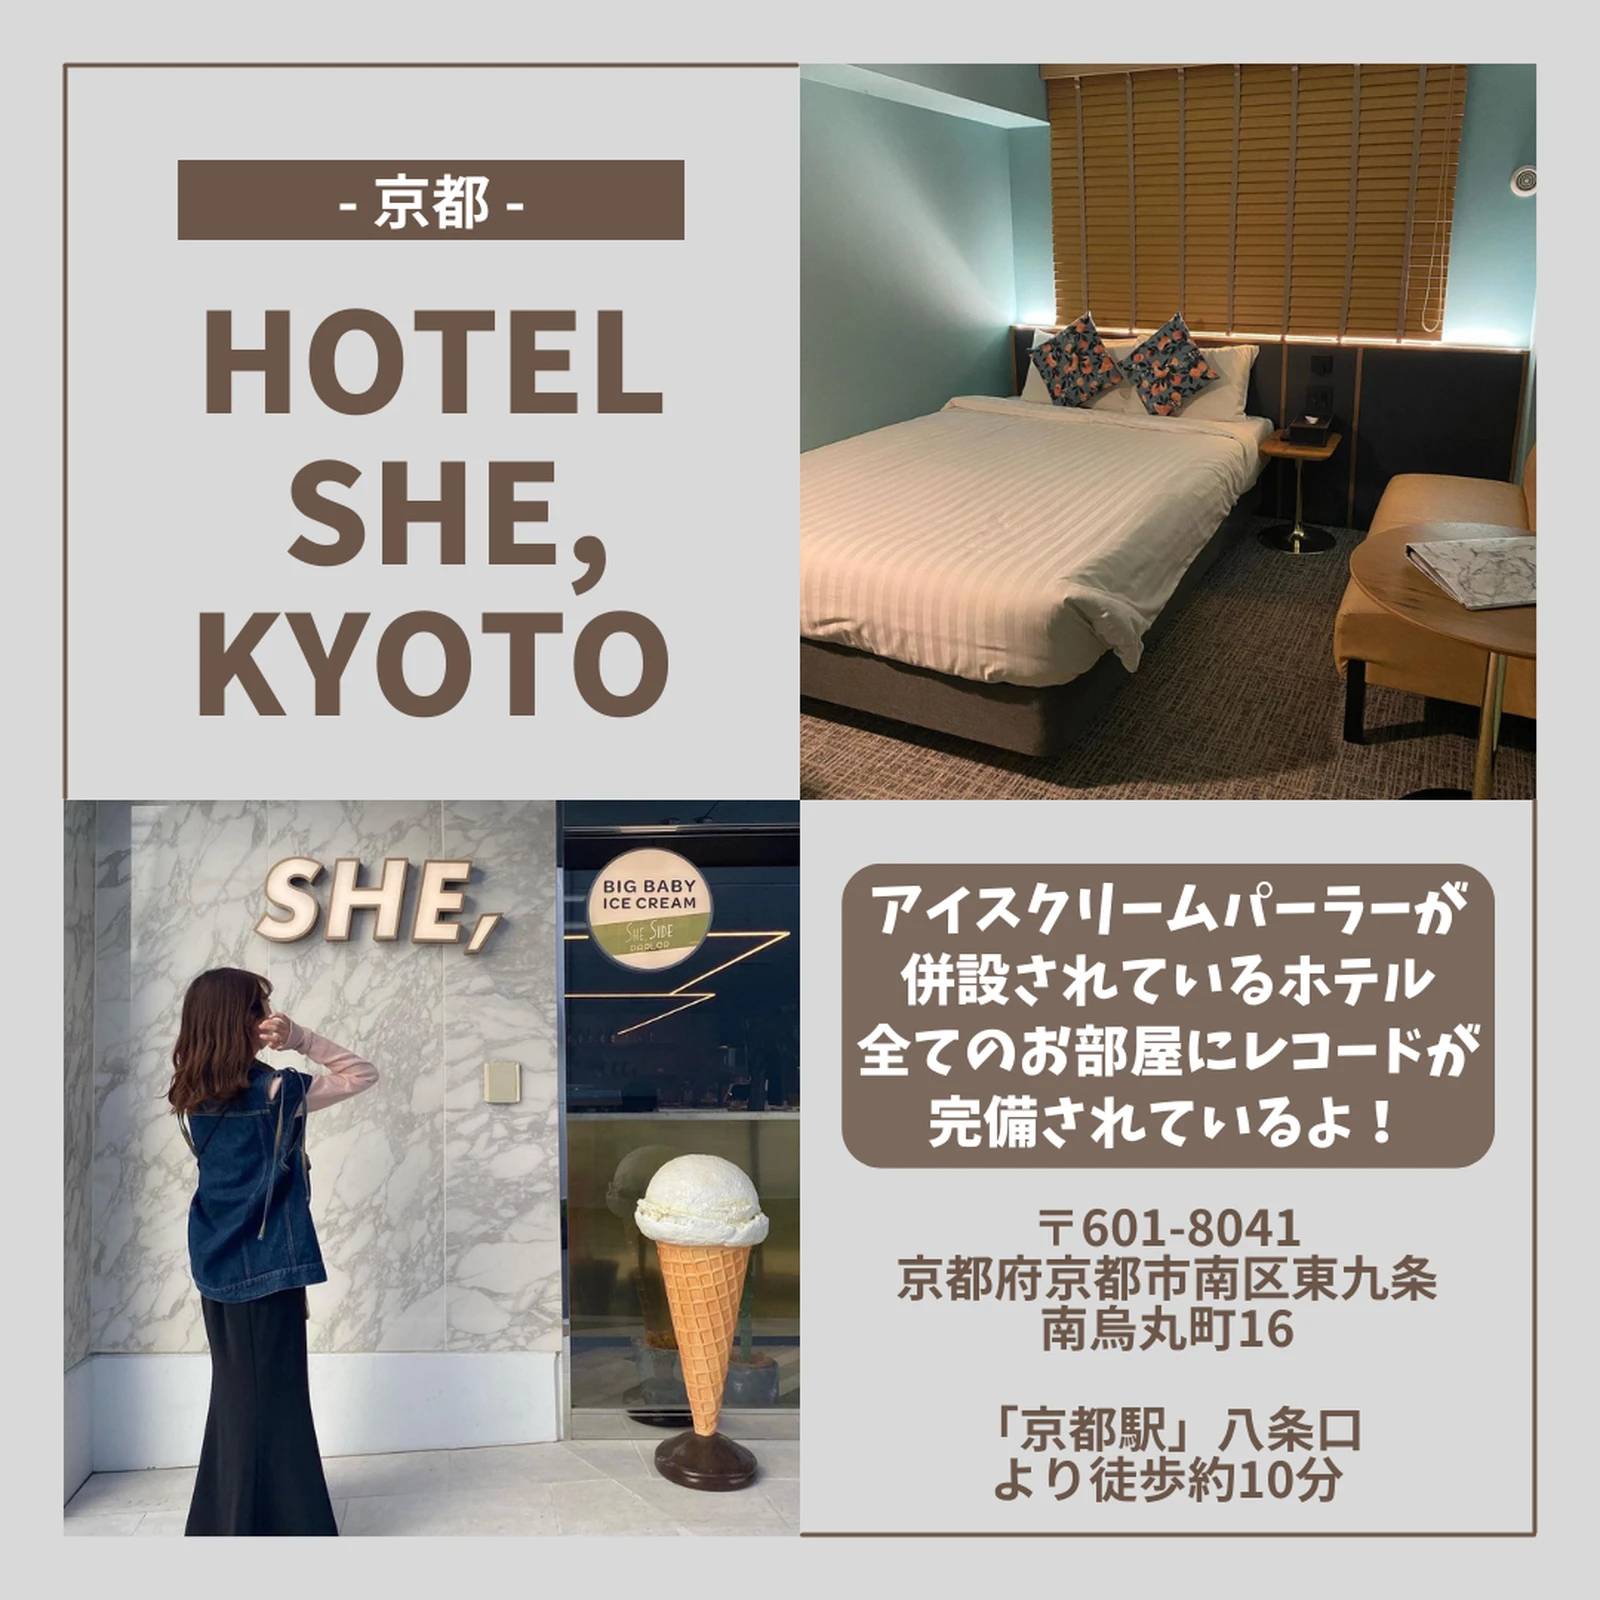 京都 おしゃれホテル5選 ミタイトラベルが投稿したフォトブック Lemon8